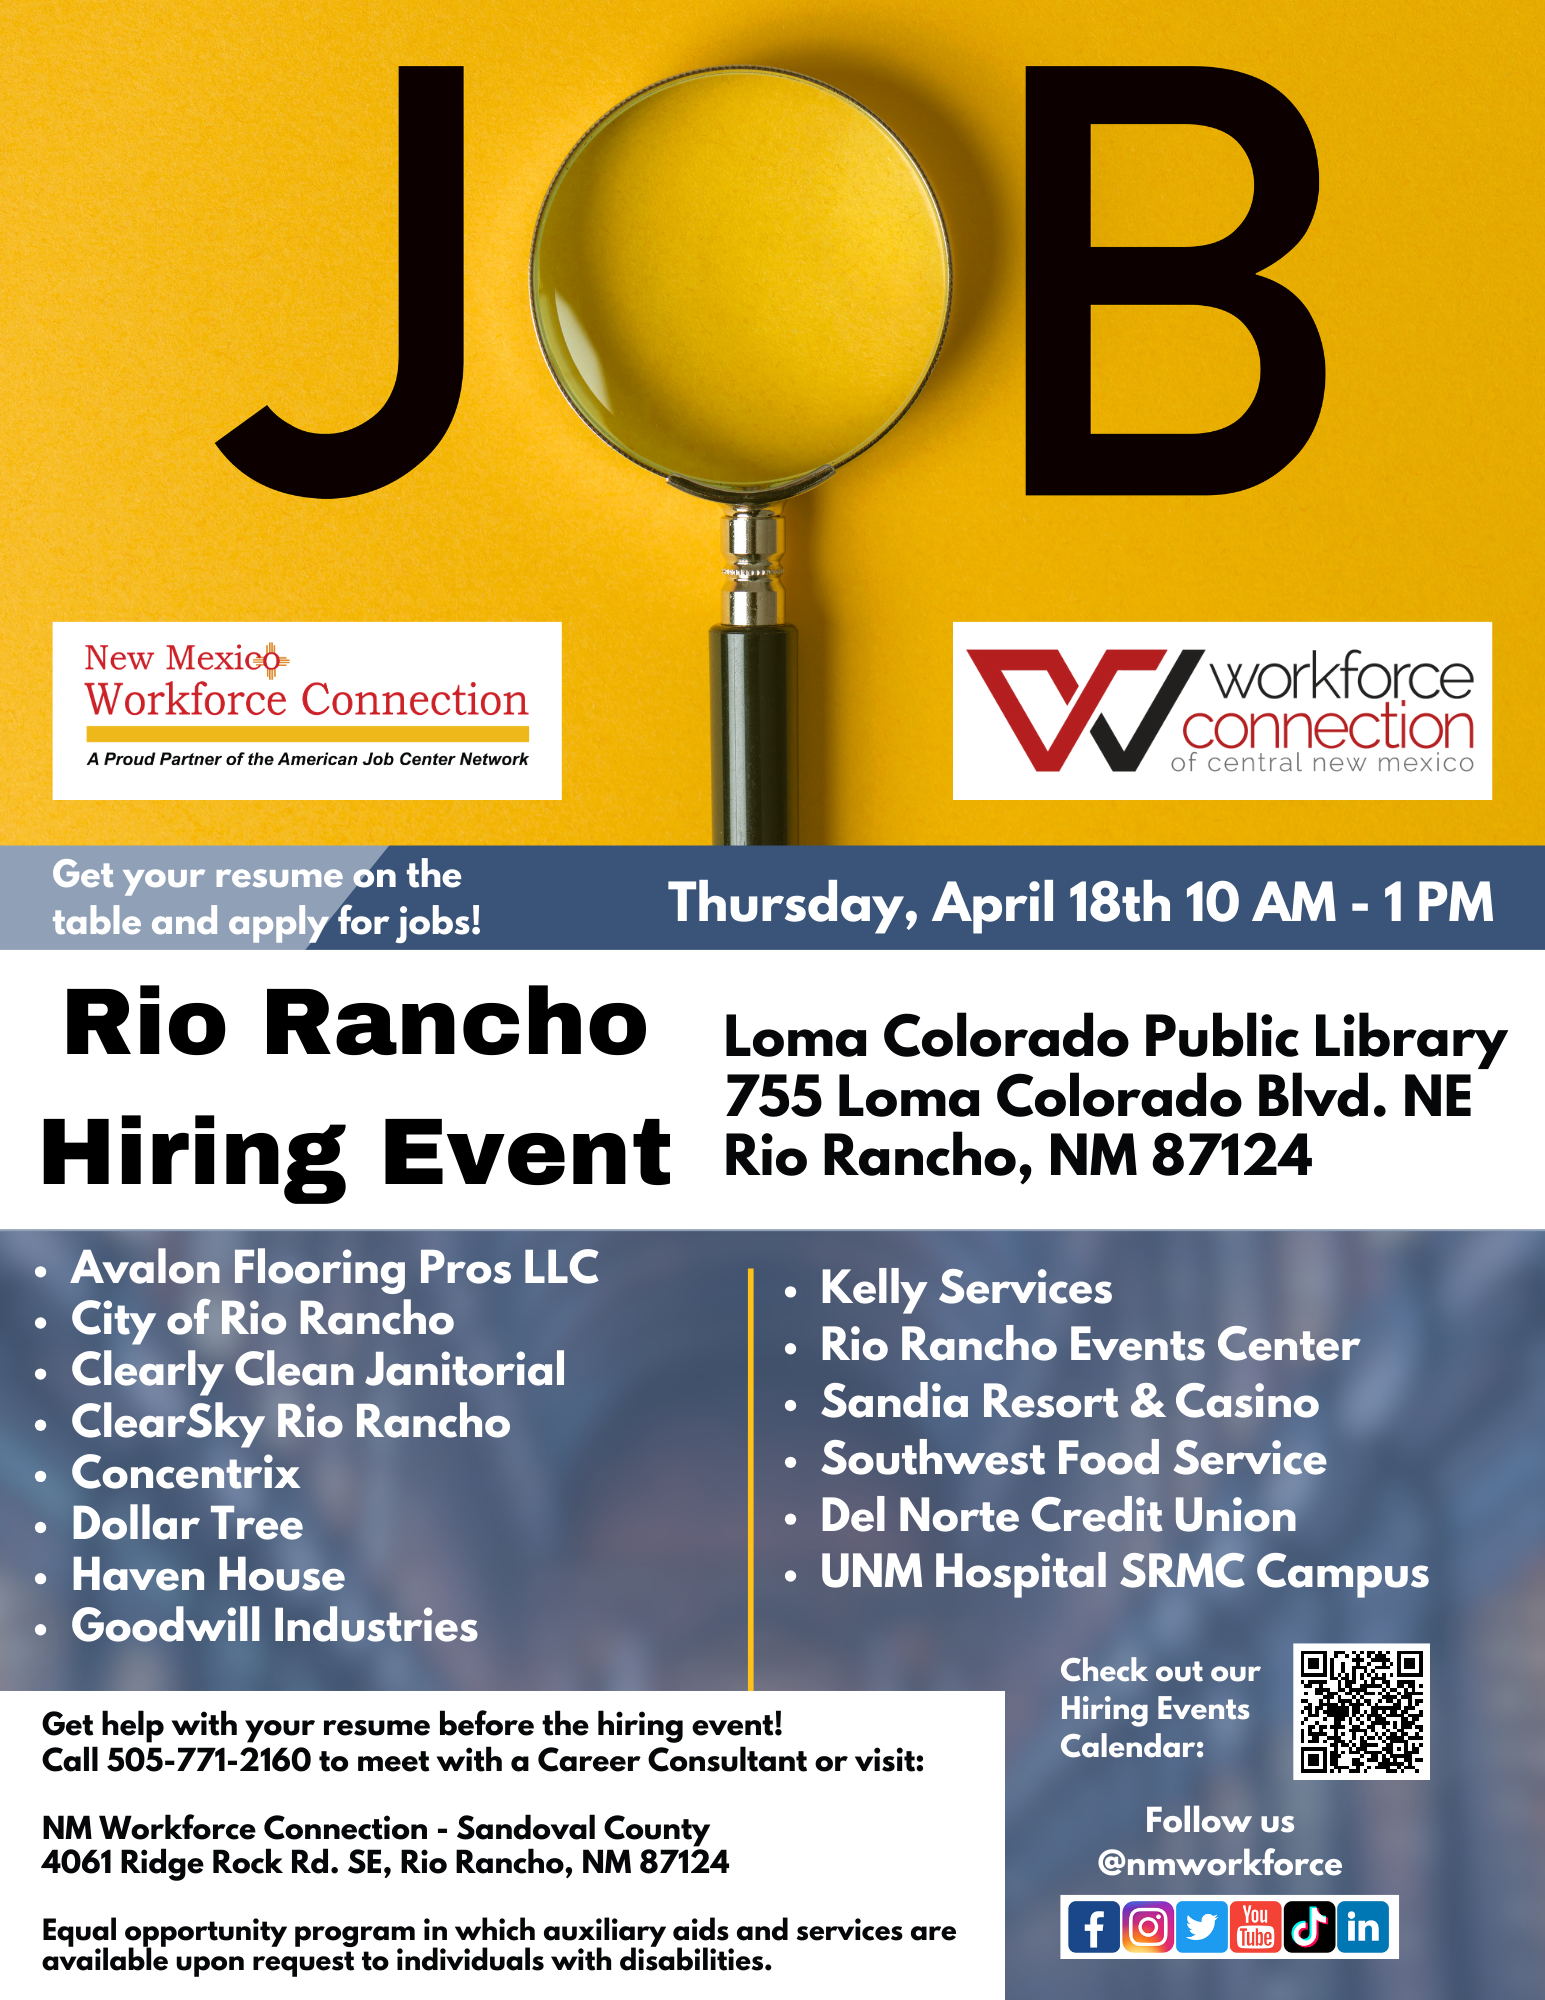 Rio Rancho Hiring Event flyer